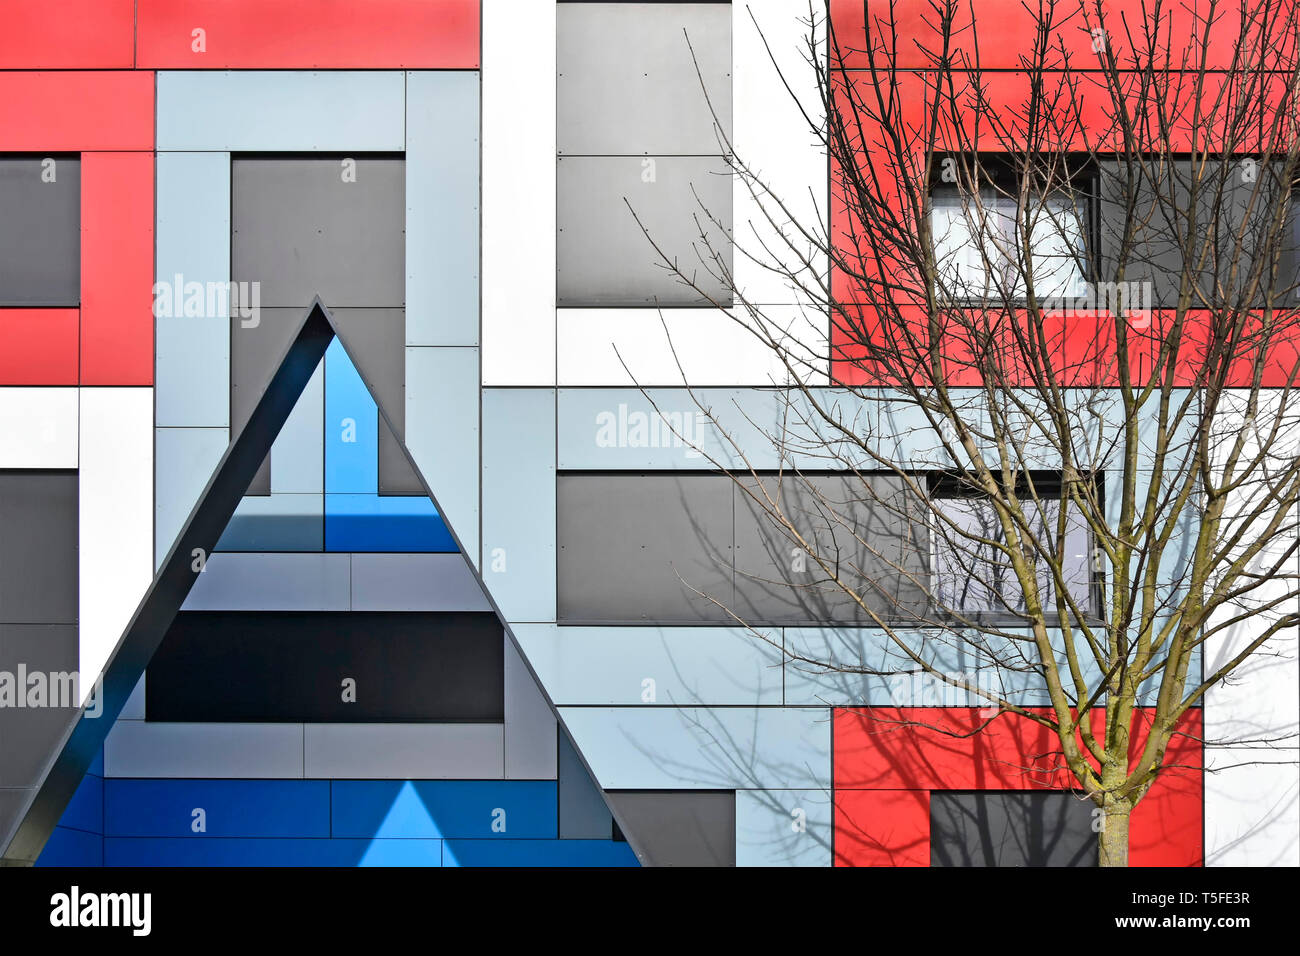 Baum & farbenfrohe abstrakte geometrische architektonische Formen mit Dreieck auf Fassade Fassade der modernen Studentenwohnheim Gebäude in Luton GROSSBRITANNIEN Stockfoto